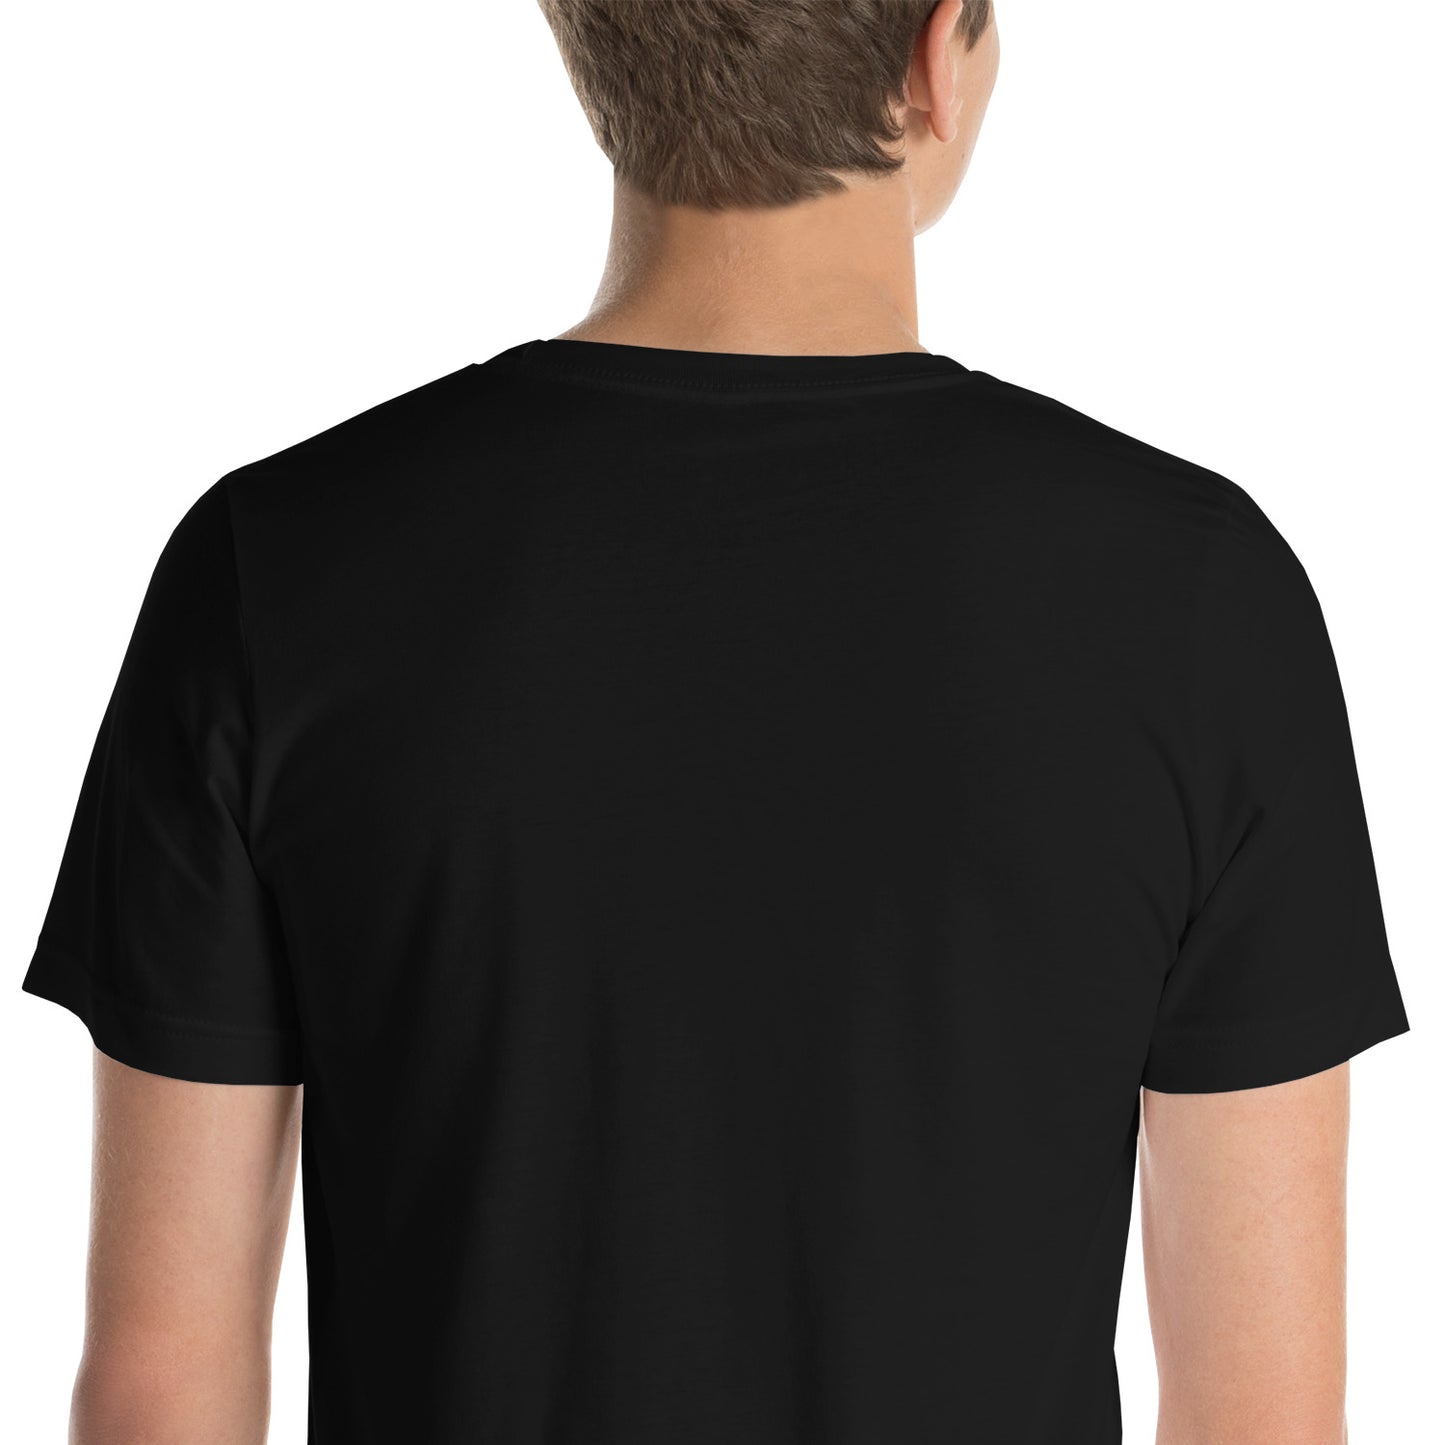 Cancer Slayer Unisex Short Sleeve T-shirt